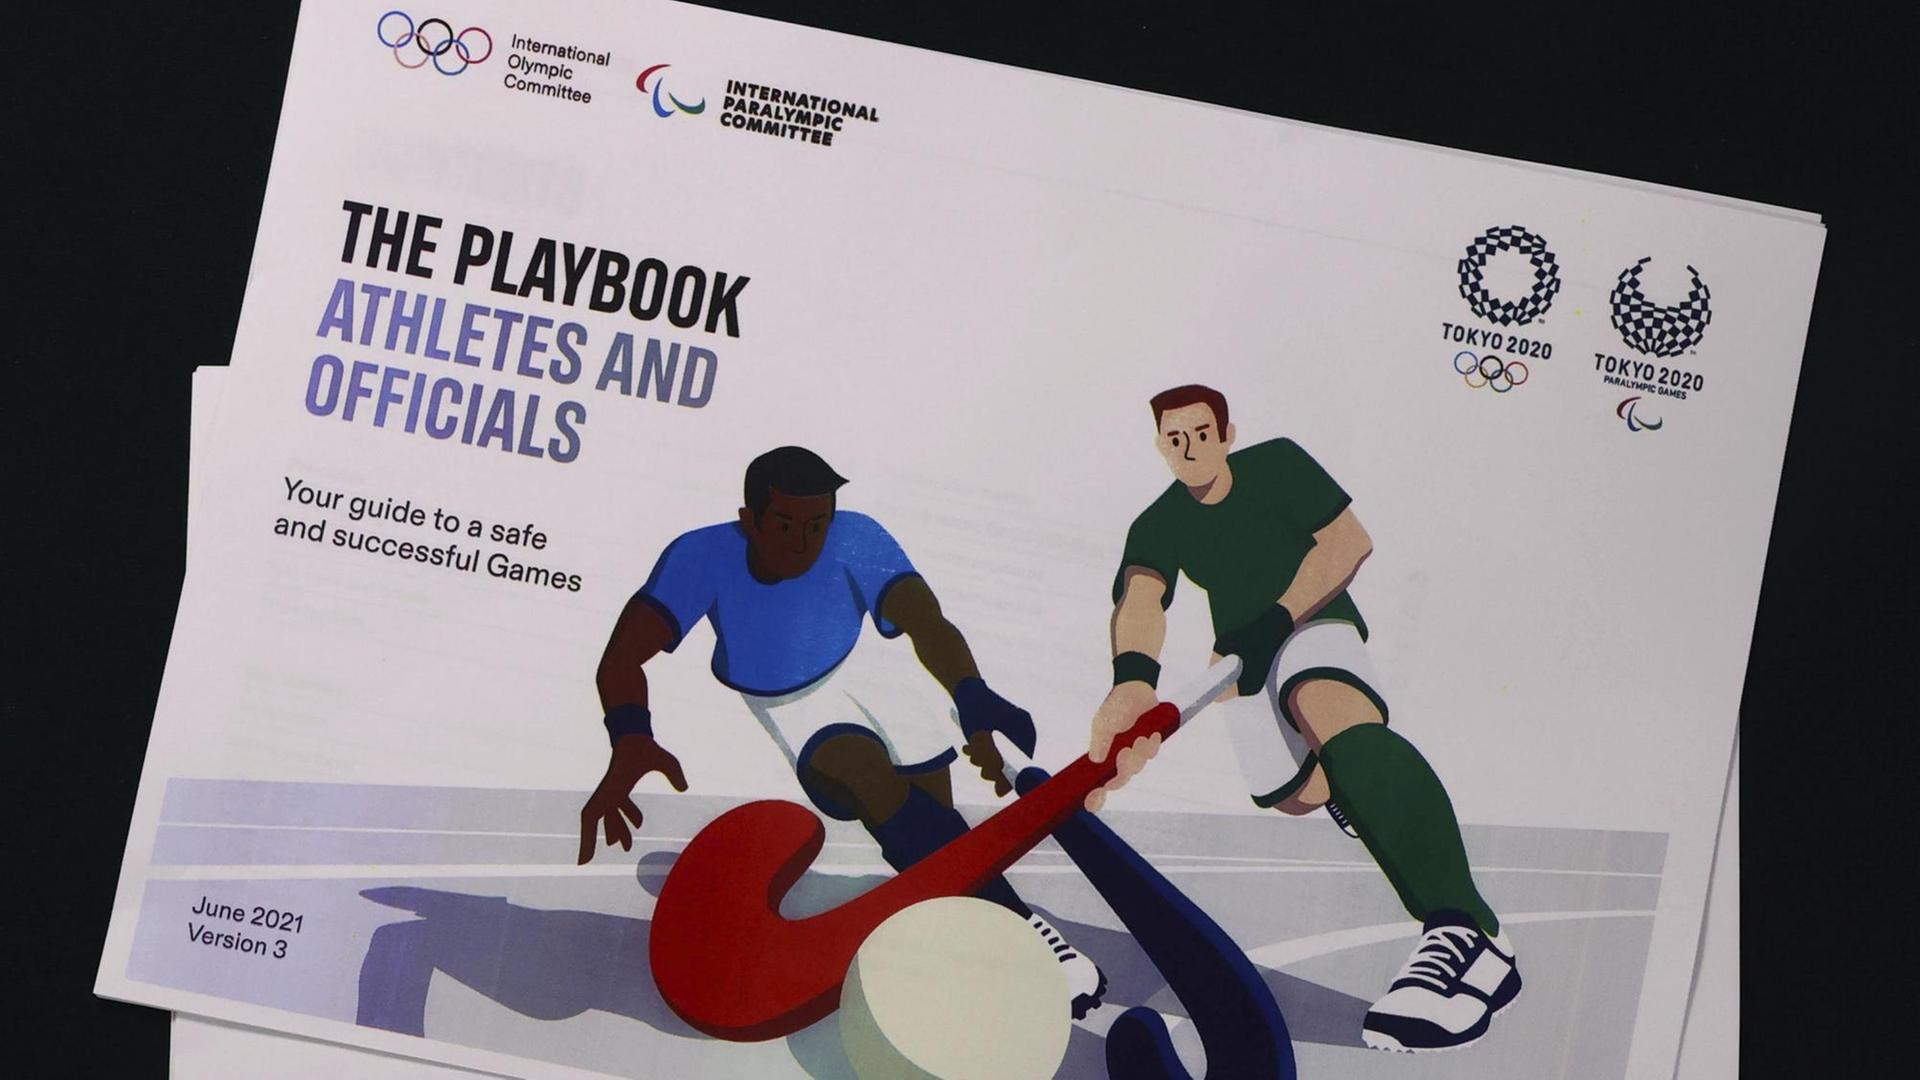 Auf der Titelseite des Playbooks ist eine Grafik von Hockeyspielern zu sehen.